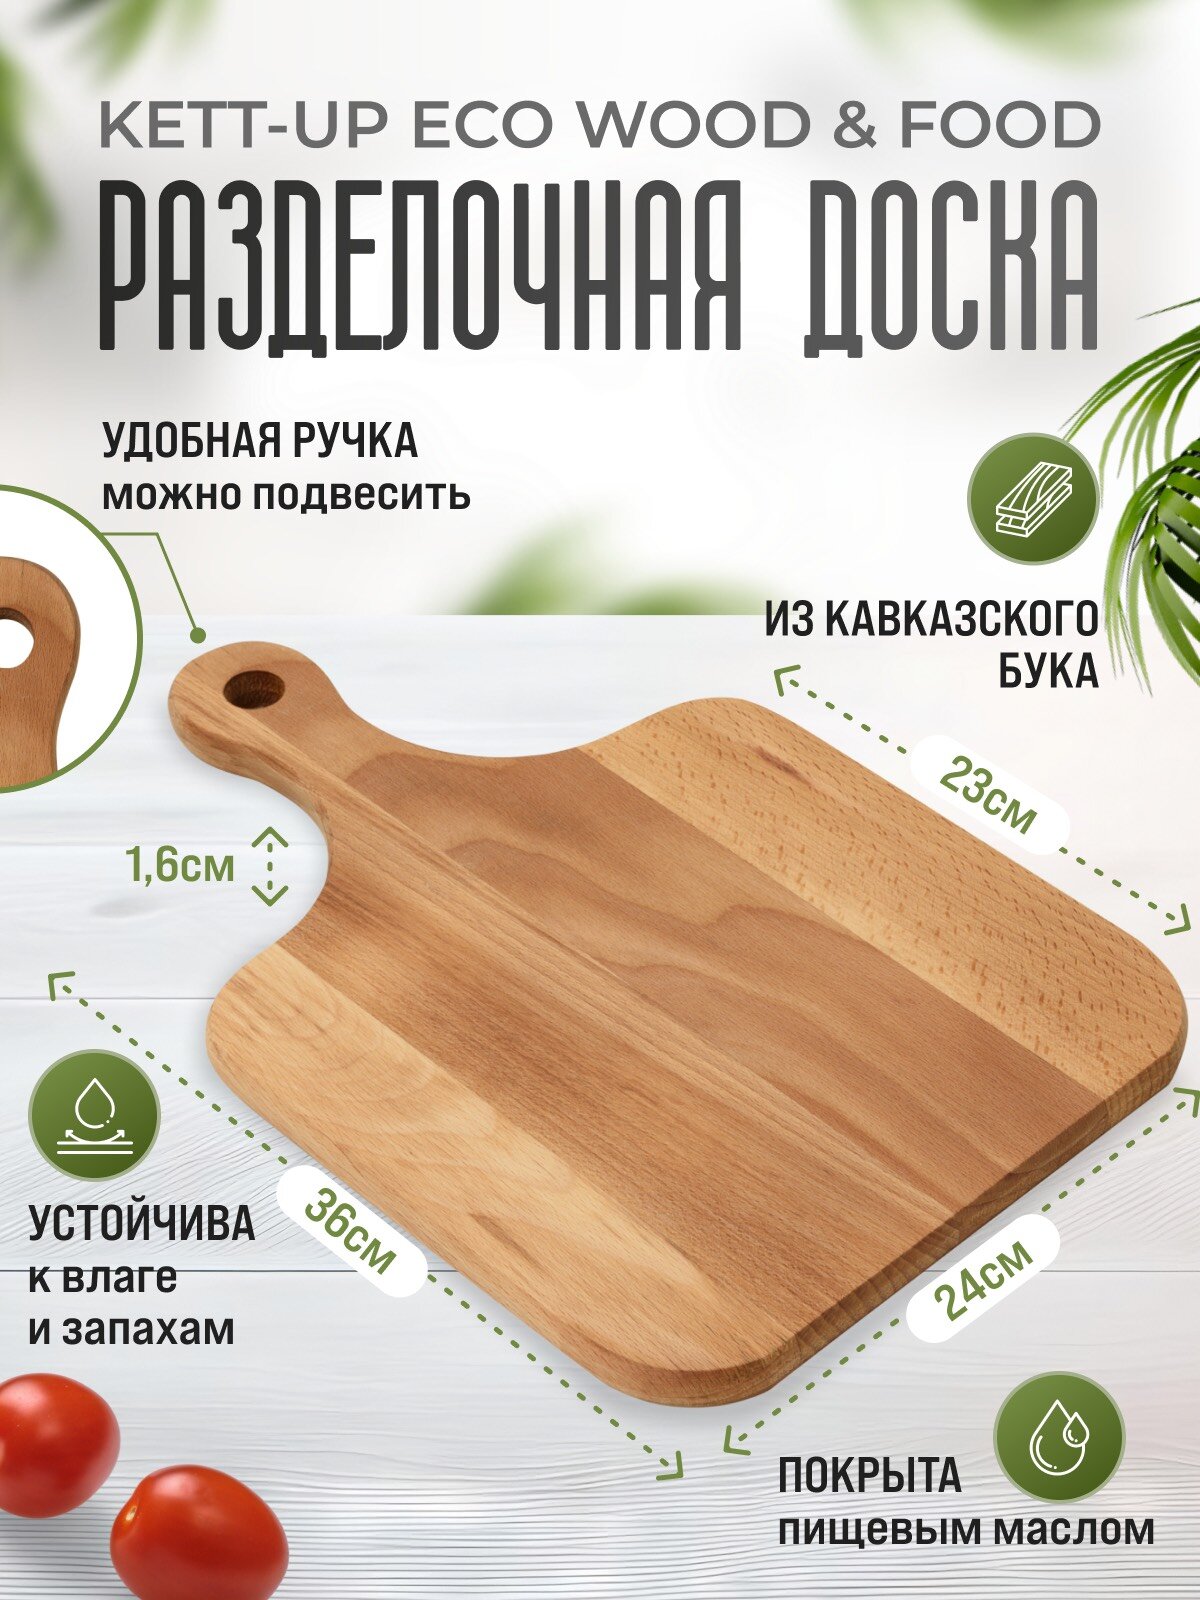 Разделочная доска KETT-UP ECO WOOD & FOOD 24*36см классическая деревянная